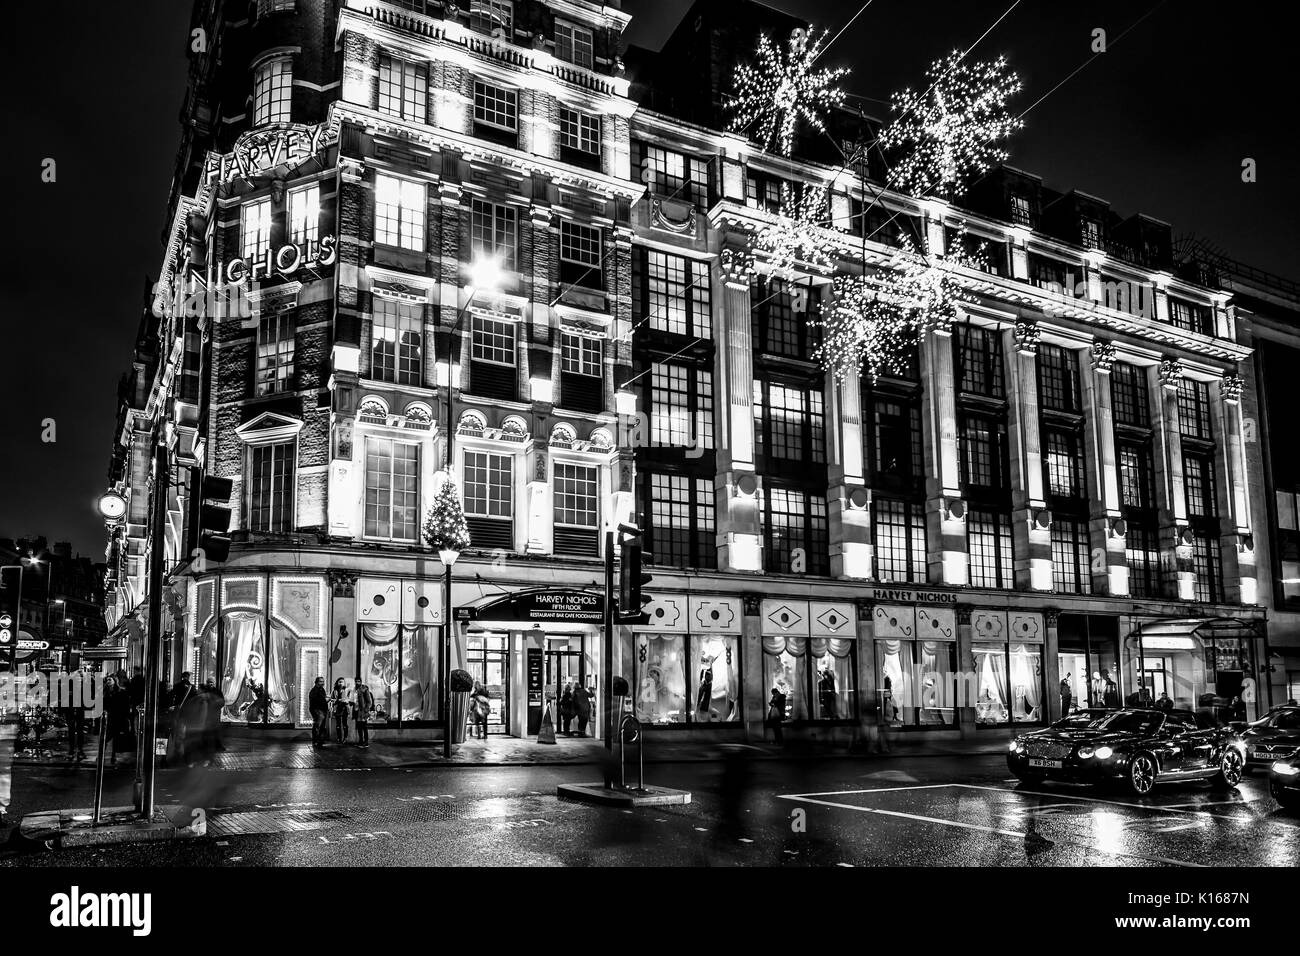 Merveilleux magasin Harvey Nichols à Londres Knightsbridge - LONDRES / ANGLETERRE - 6 DÉCEMBRE 2017 Banque D'Images